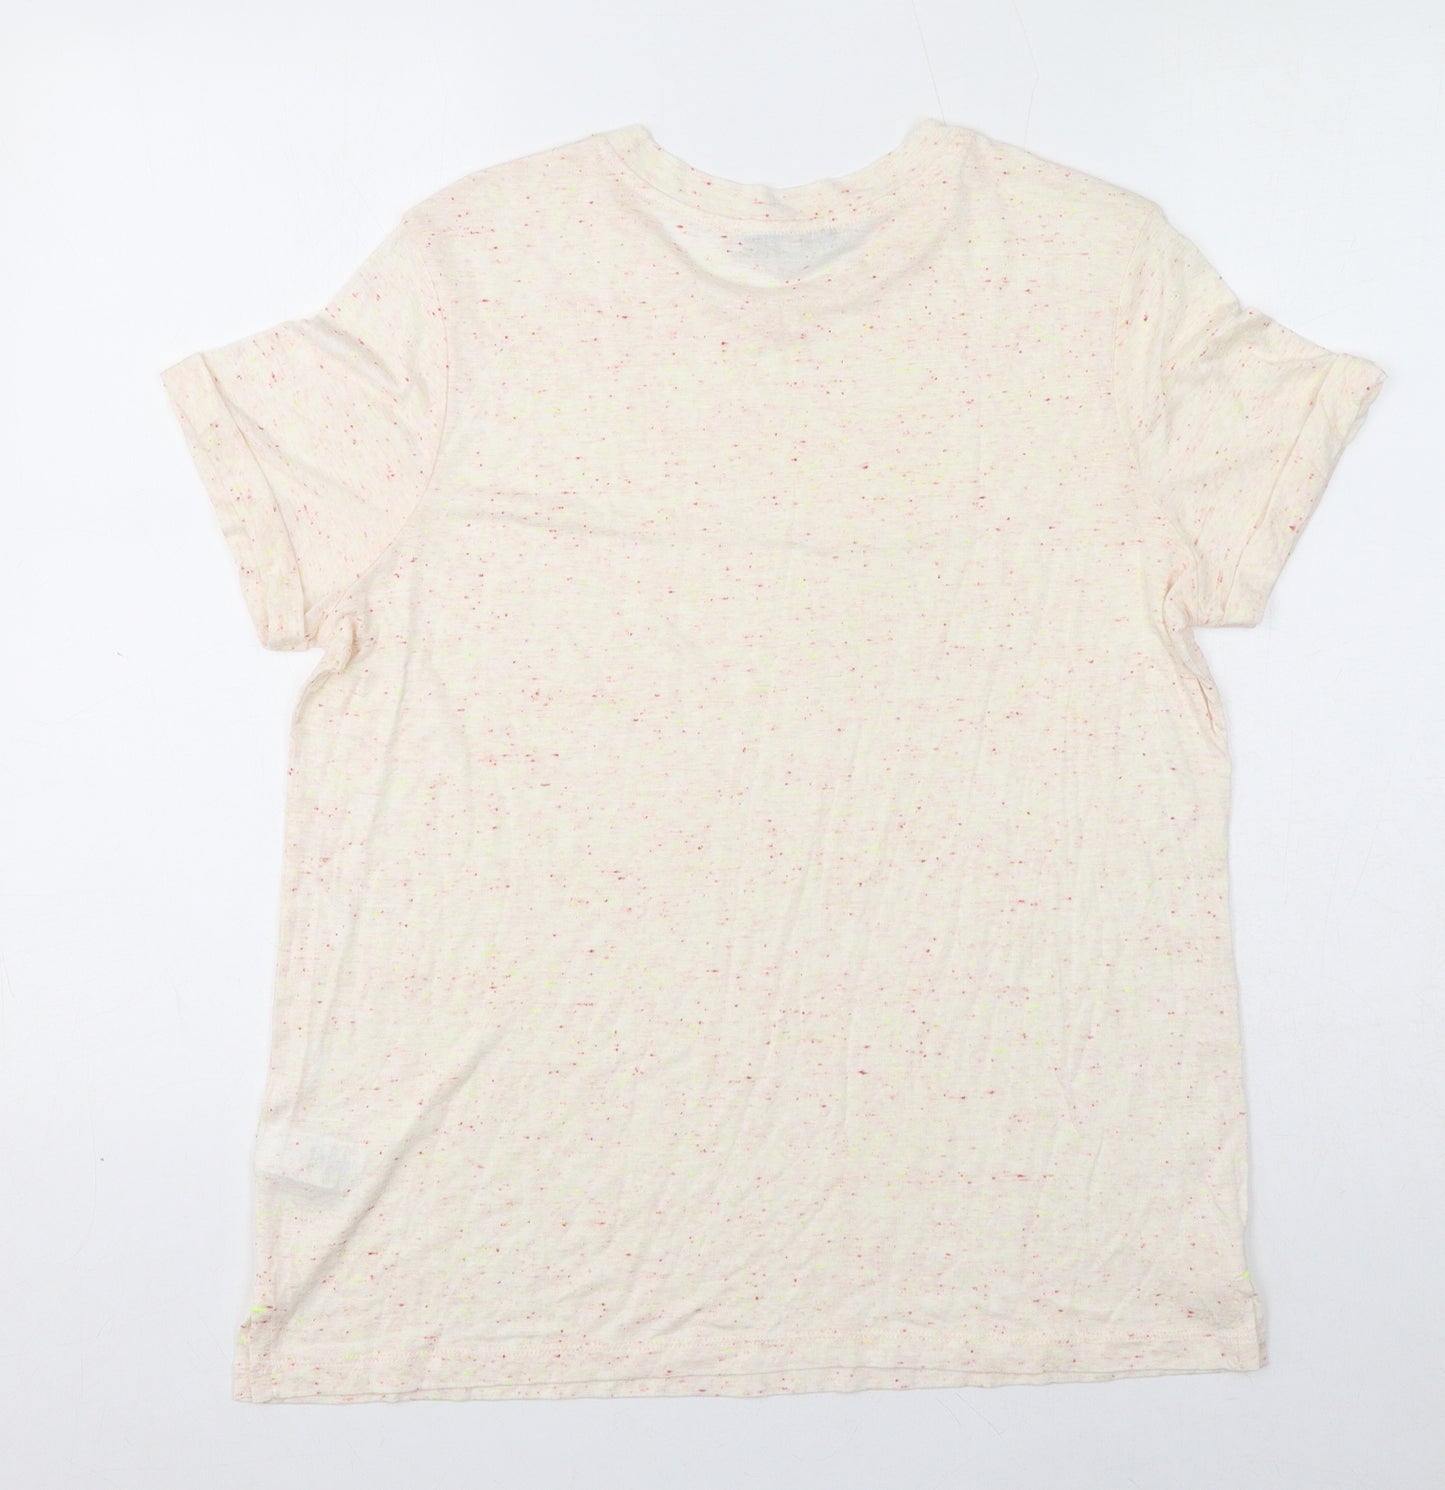 NEXT Womens Ivory Viscose Basic T-Shirt Size 14 Round Neck